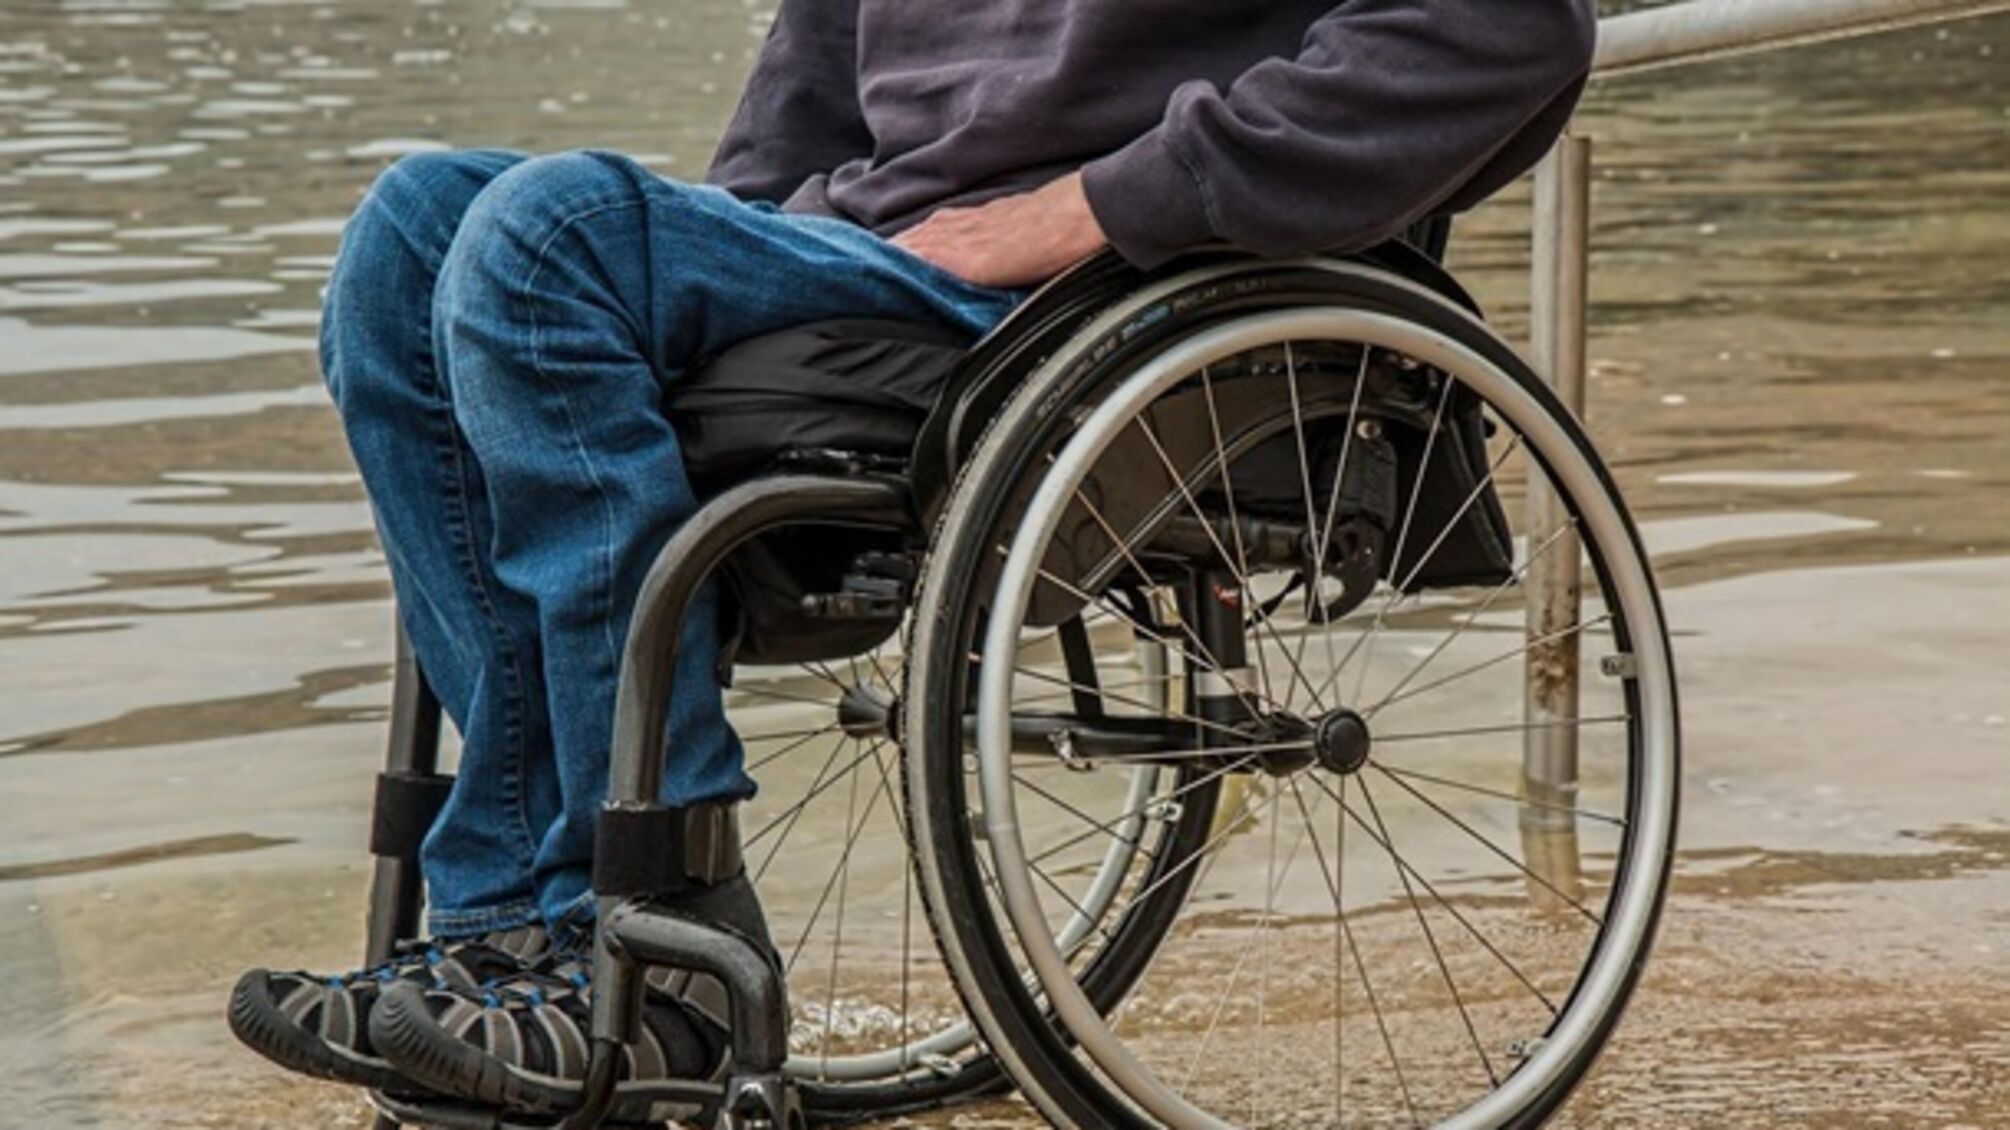 Украина готовит реформу: законопроект предлагает заменить инвалидность оценкой потери функциональности